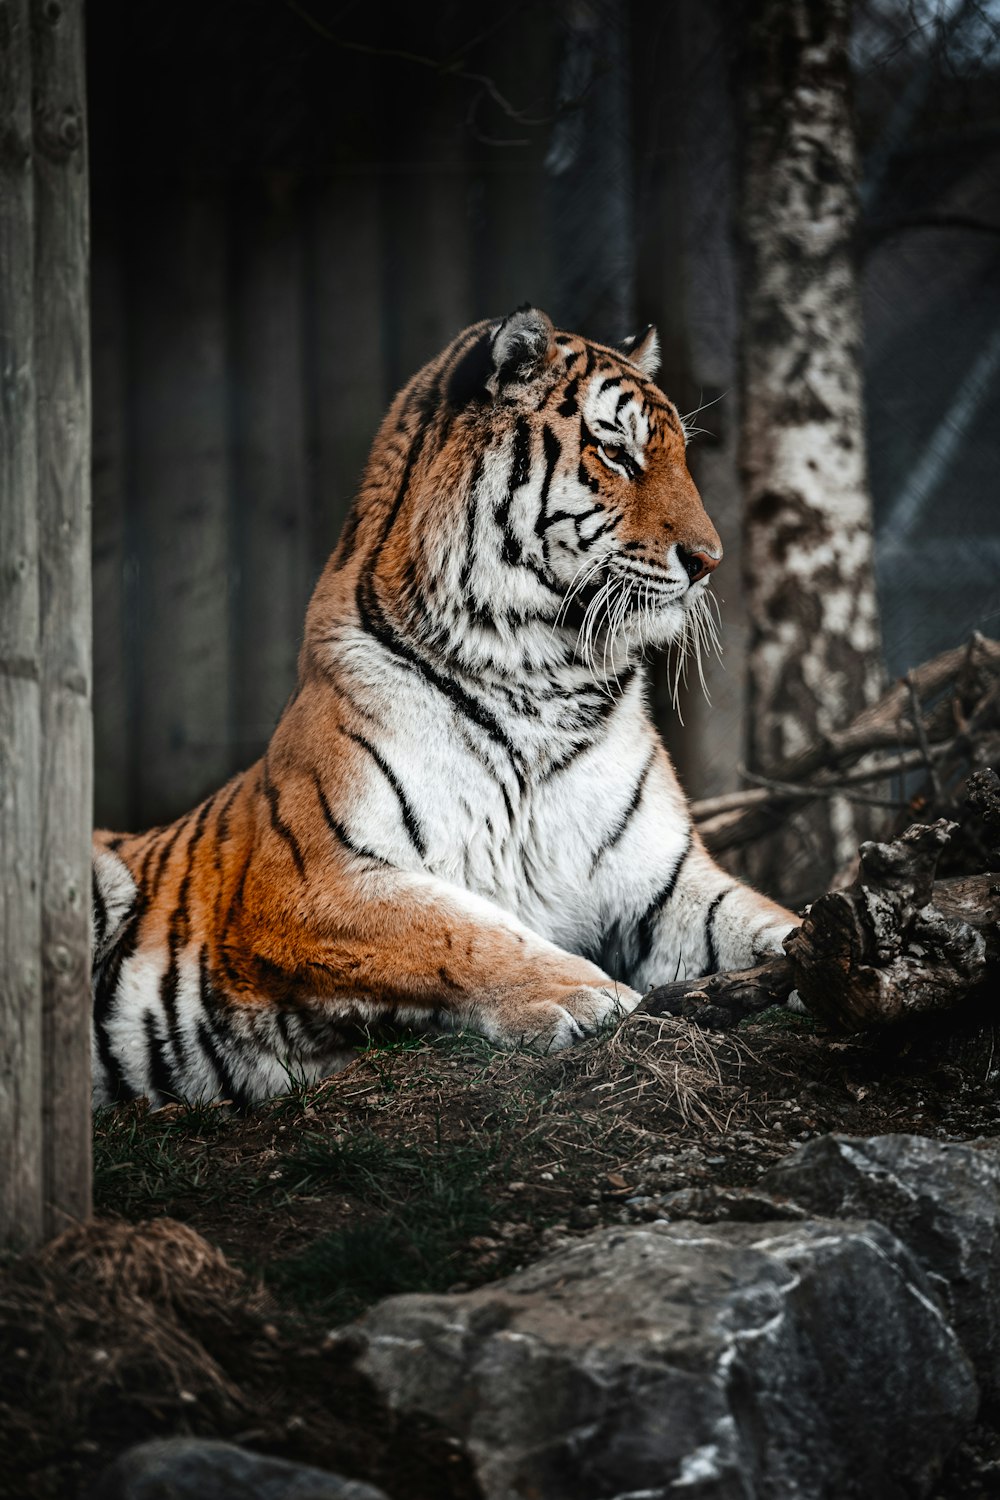 tiger lying on brown soil